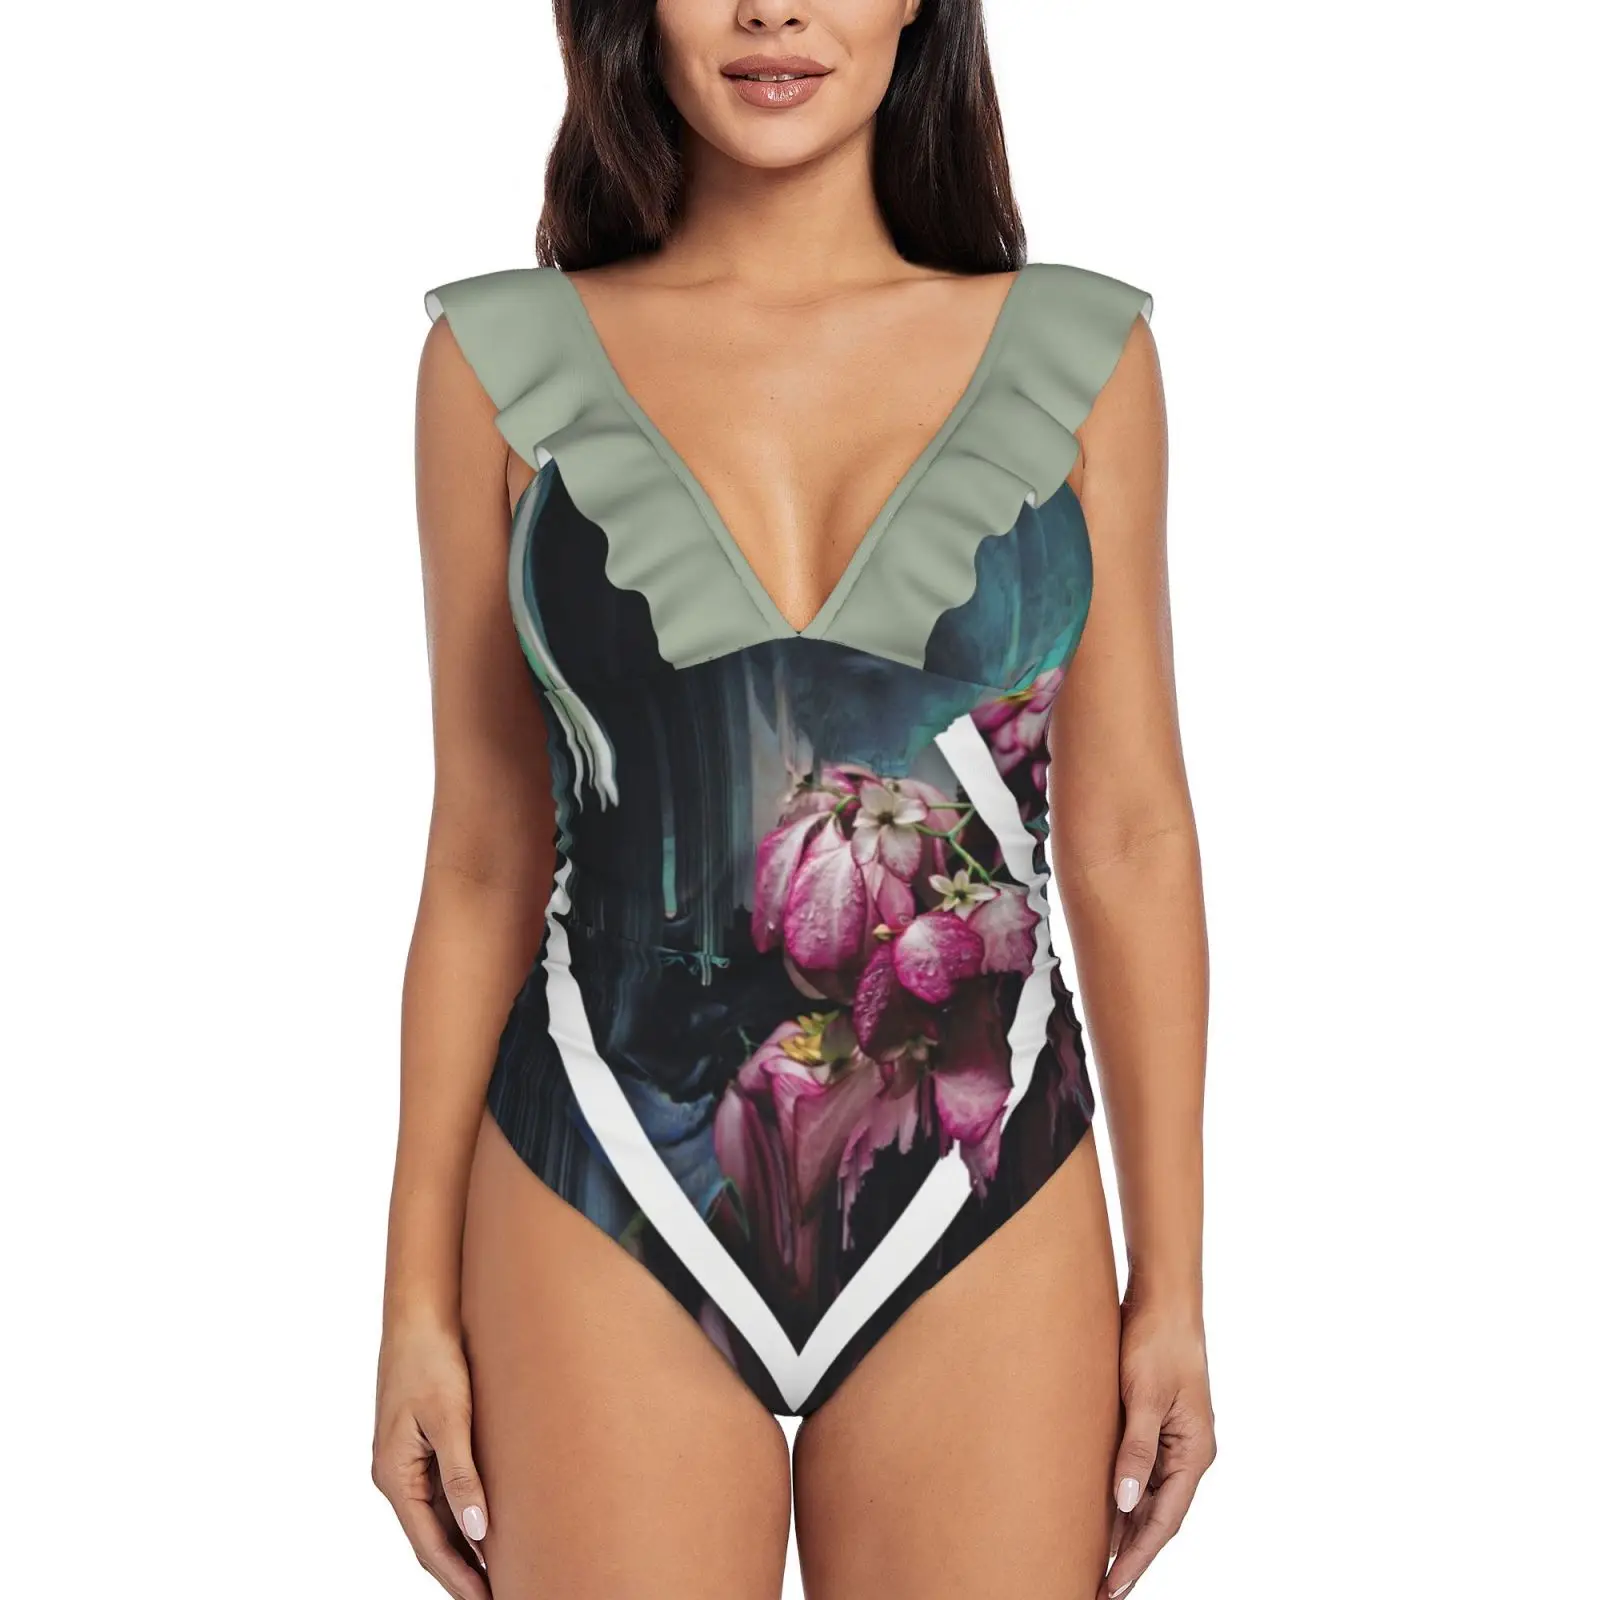 

Сексуальный слитный купальник Dark Orchid 1, женский купальник, монокини, купальный костюм с оборками, пляжная одежда, эстетичные с цветочным узором и блестками